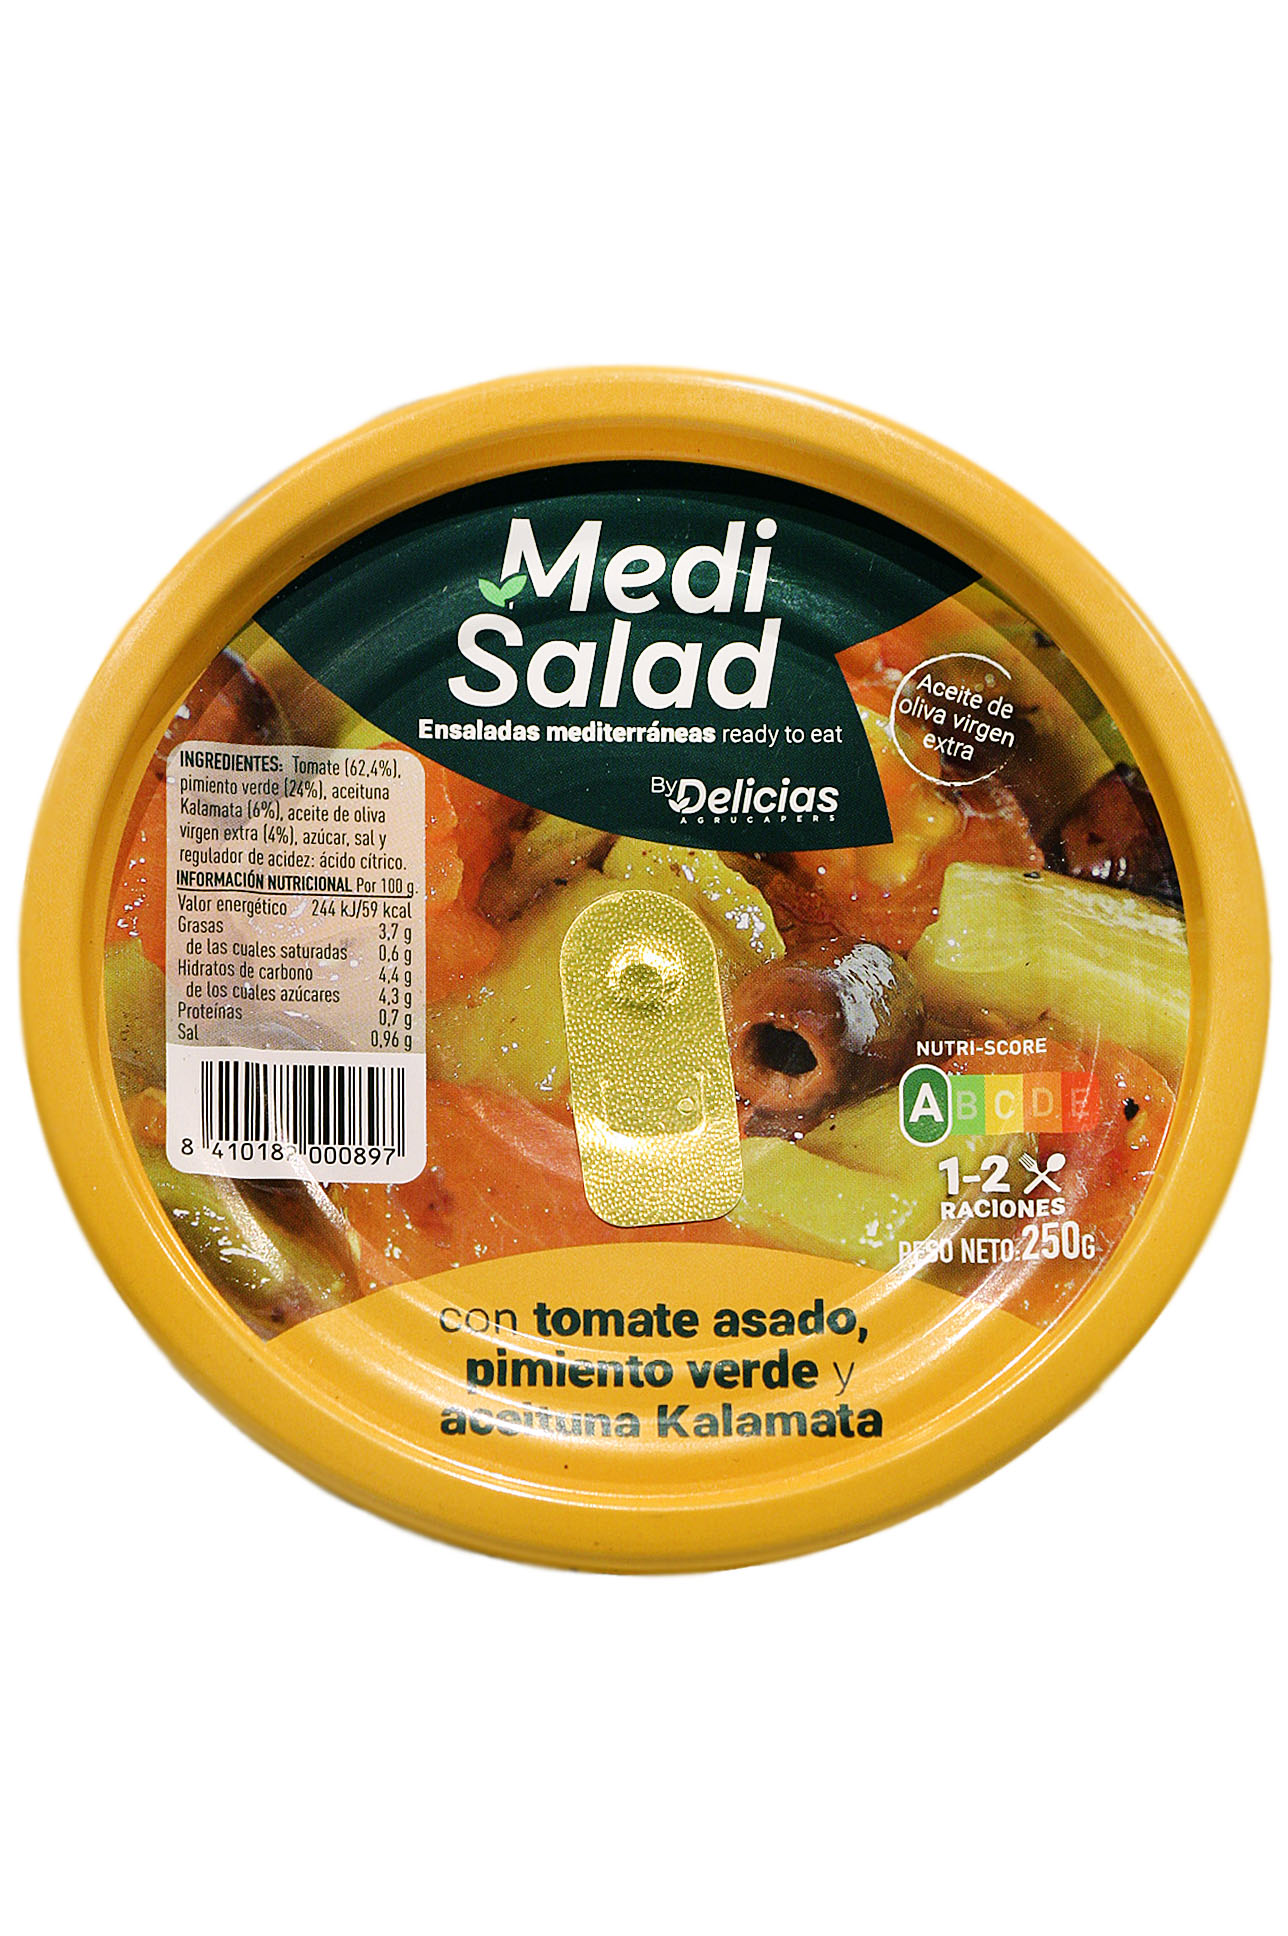 Ensalada Con Tomate Asado, Pimiento Verde Y Kalamata Medi salad